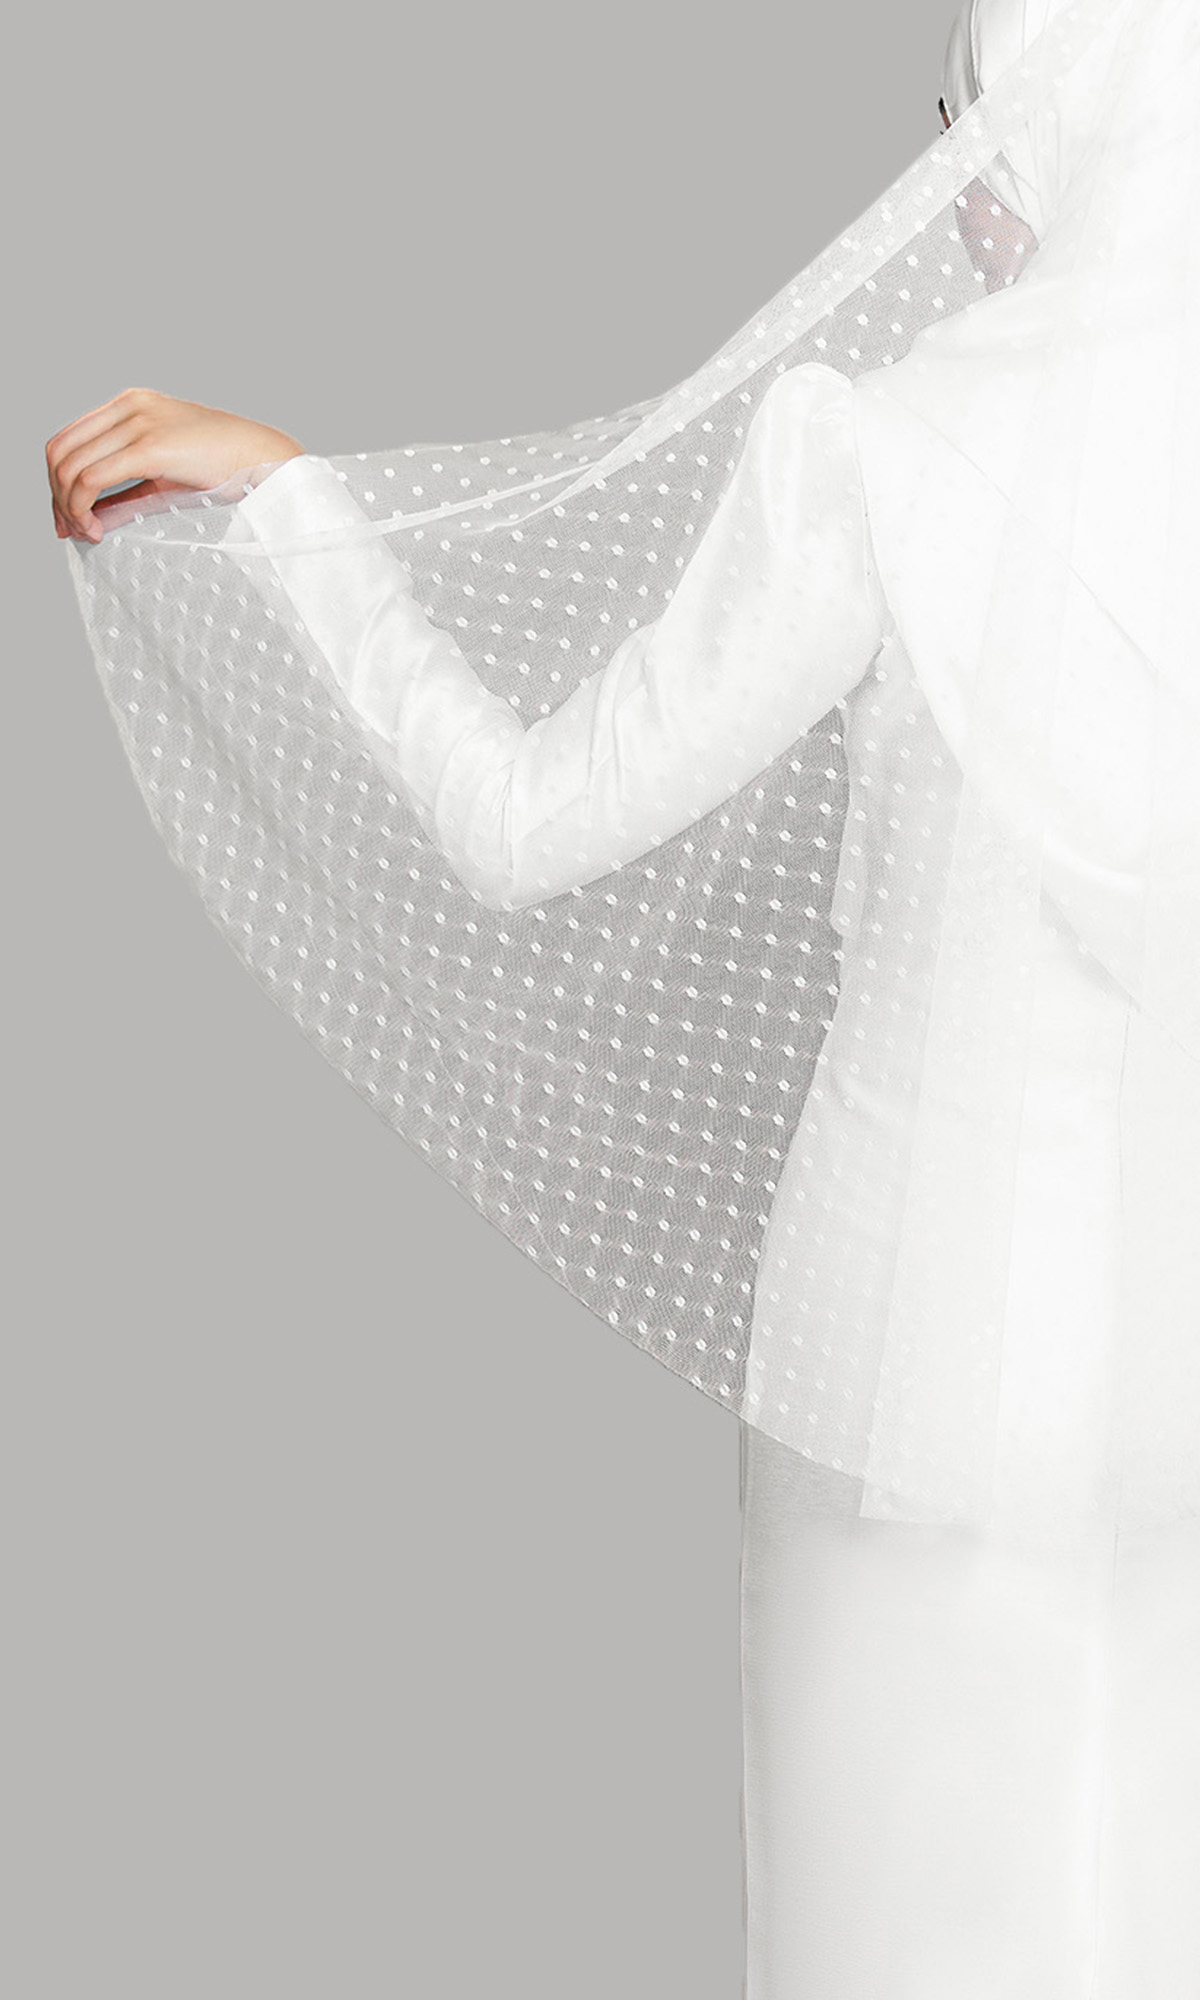 Raiisa Veil in White